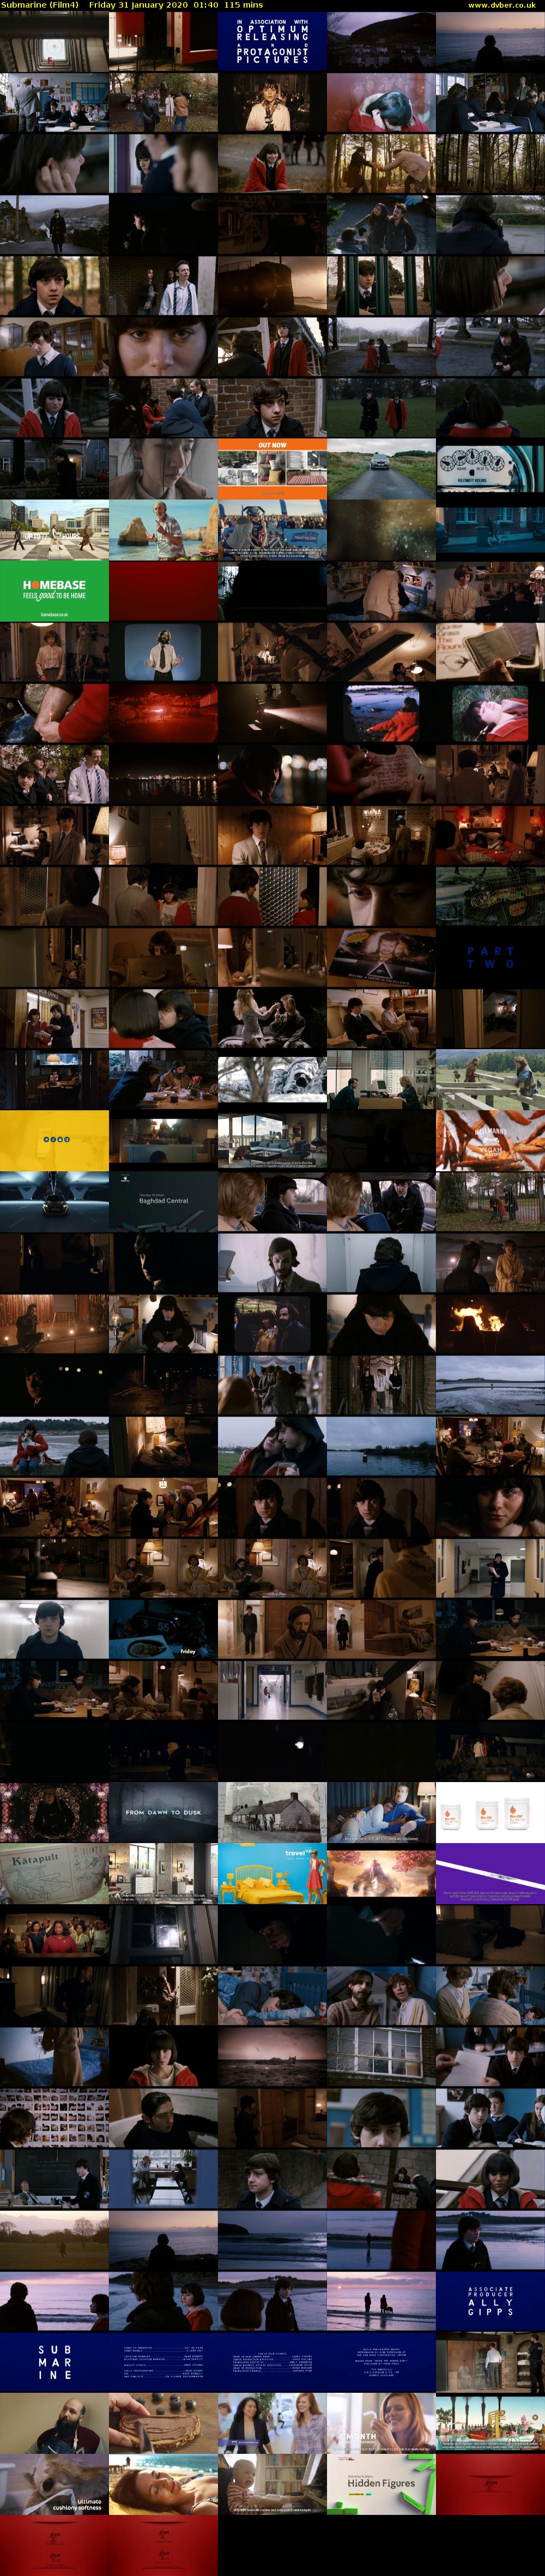 Submarine (Film4) Friday 31 January 2020 01:40 - 03:35